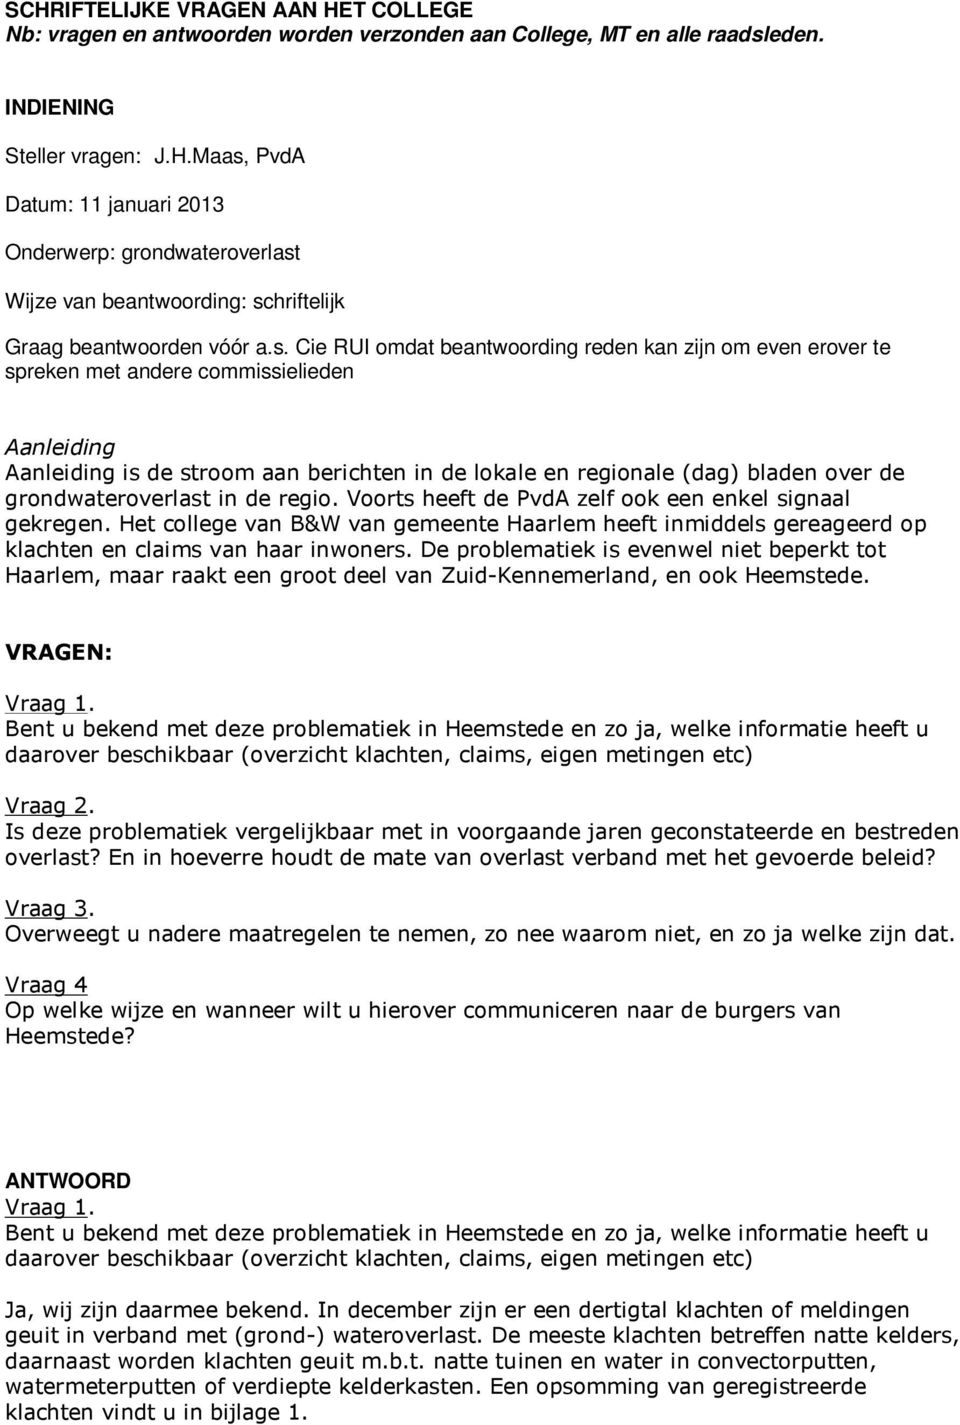 grondwateroverlast in de regio. Voorts heeft de PvdA zelf ook een enkel signaal gekregen. Het college van B&W van gemeente Haarlem heeft inmiddels gereageerd op klachten en claims van haar inwoners.